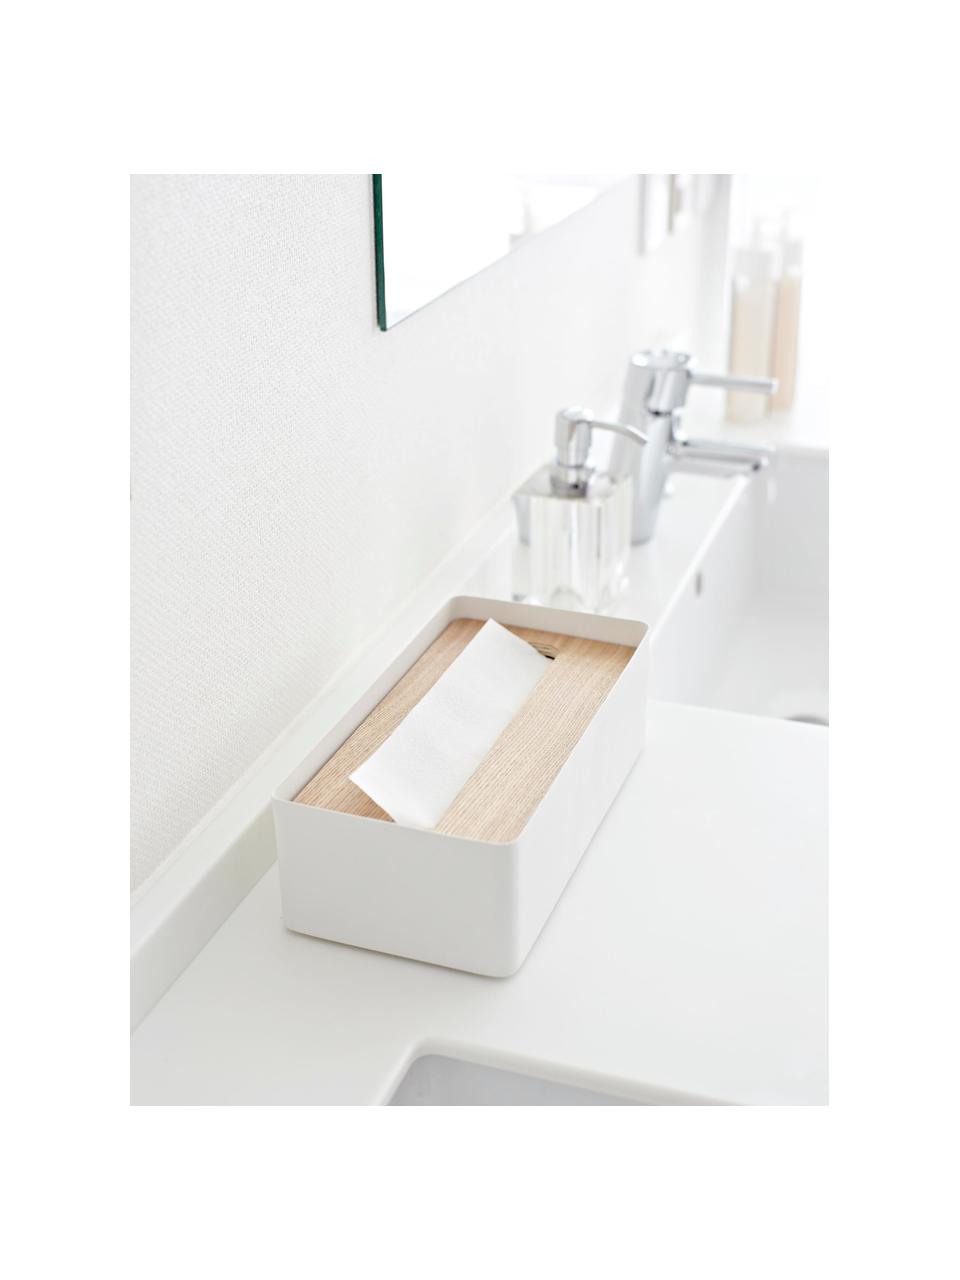 Kosmetiktuchbox Rin mit abnehmbaren Bambus-Deckel, Deckel: Holz, Box: Stahl, lackiert, Weiß, Braun, B 26 x H 8 cm